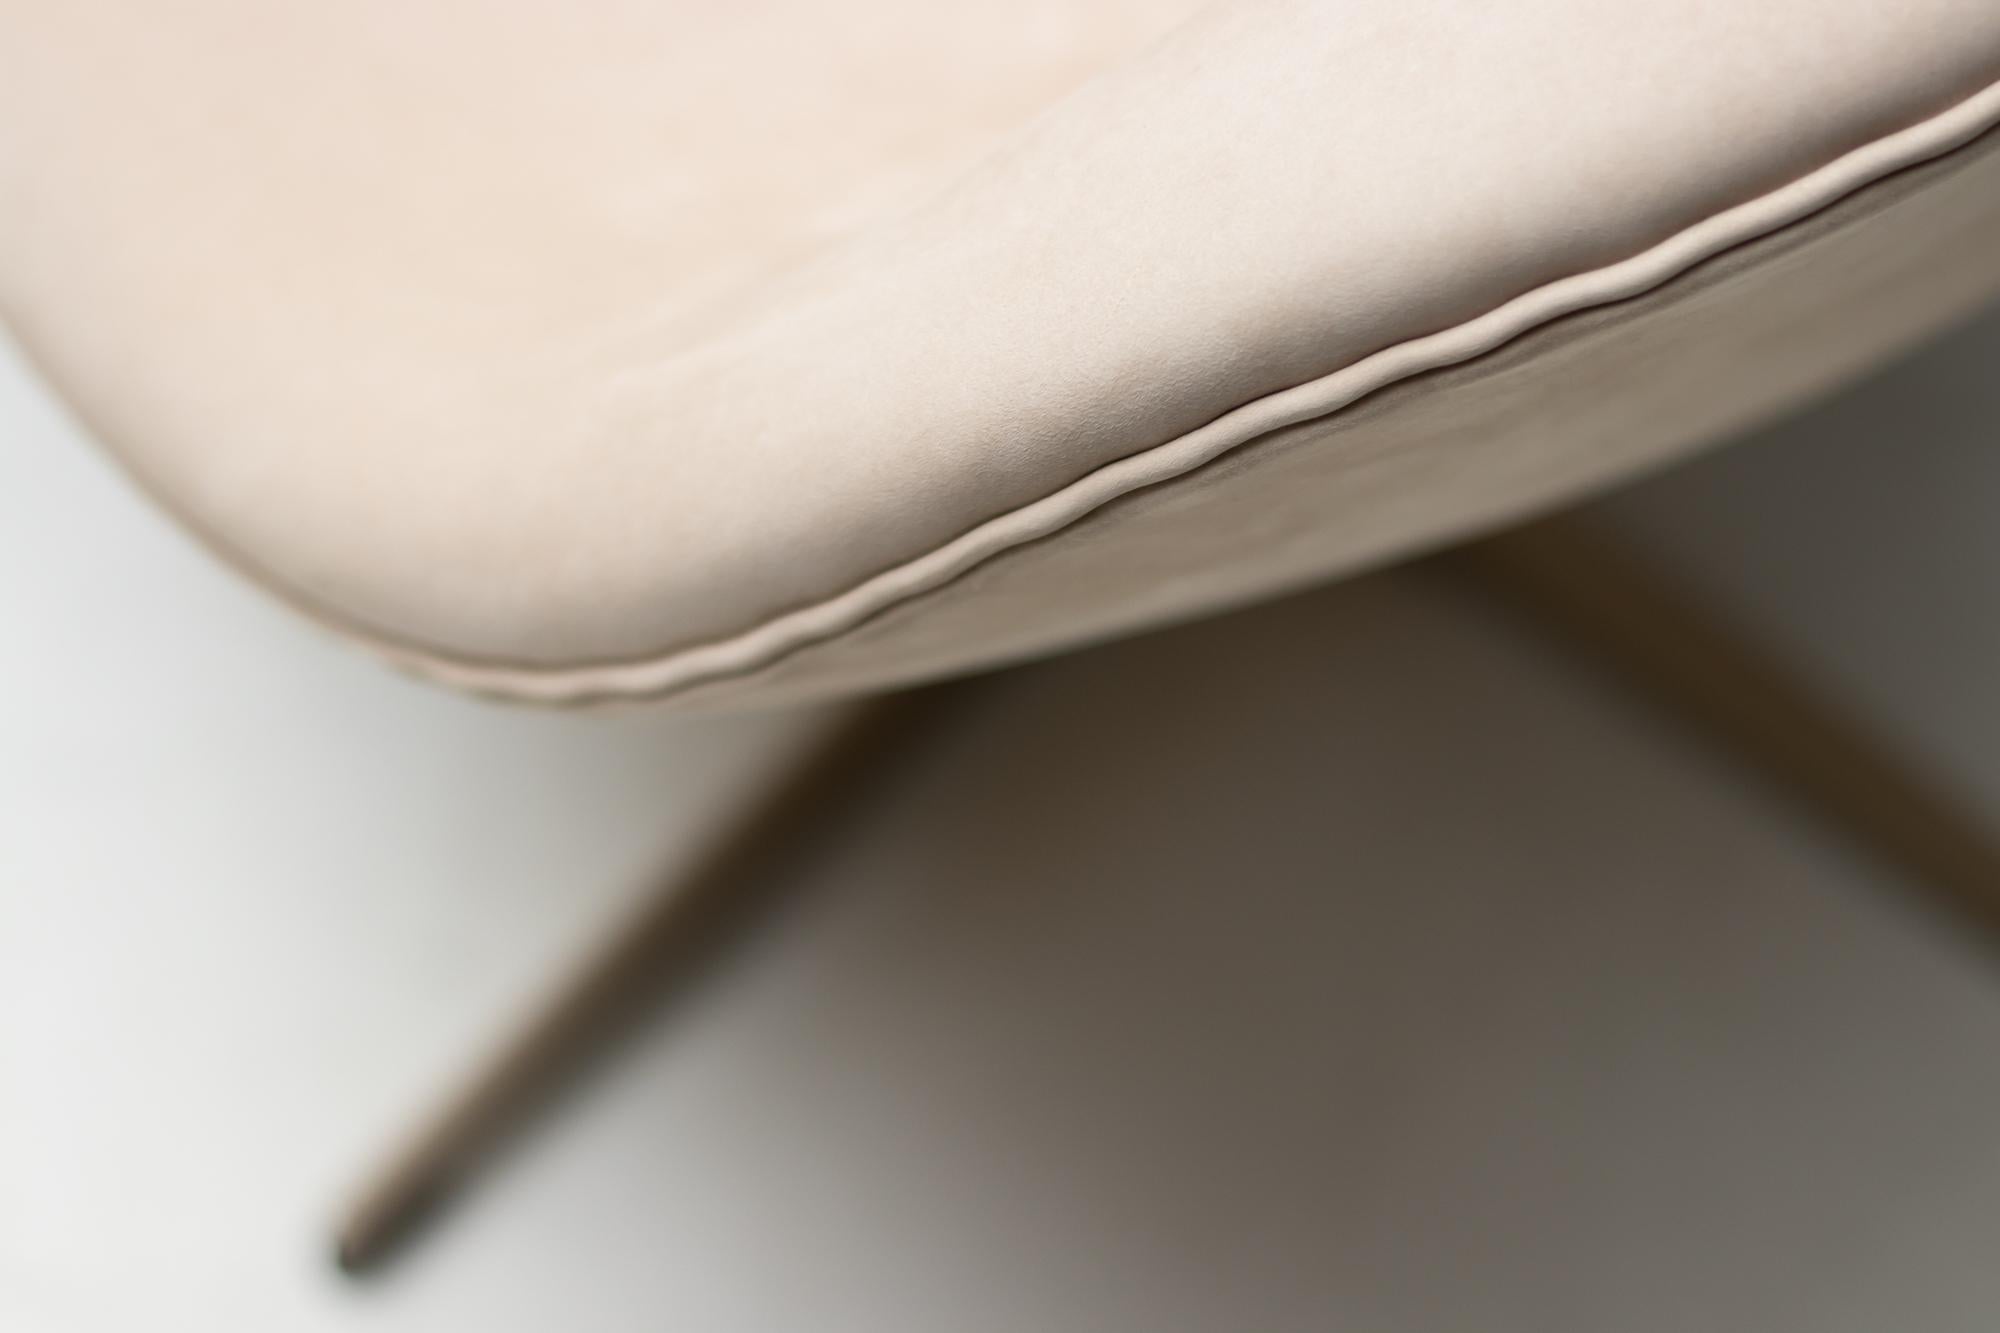 Scandinavian Modern Fritz Hansen’s Choice Limited Edition Swan Chair by Arne Jacobsen